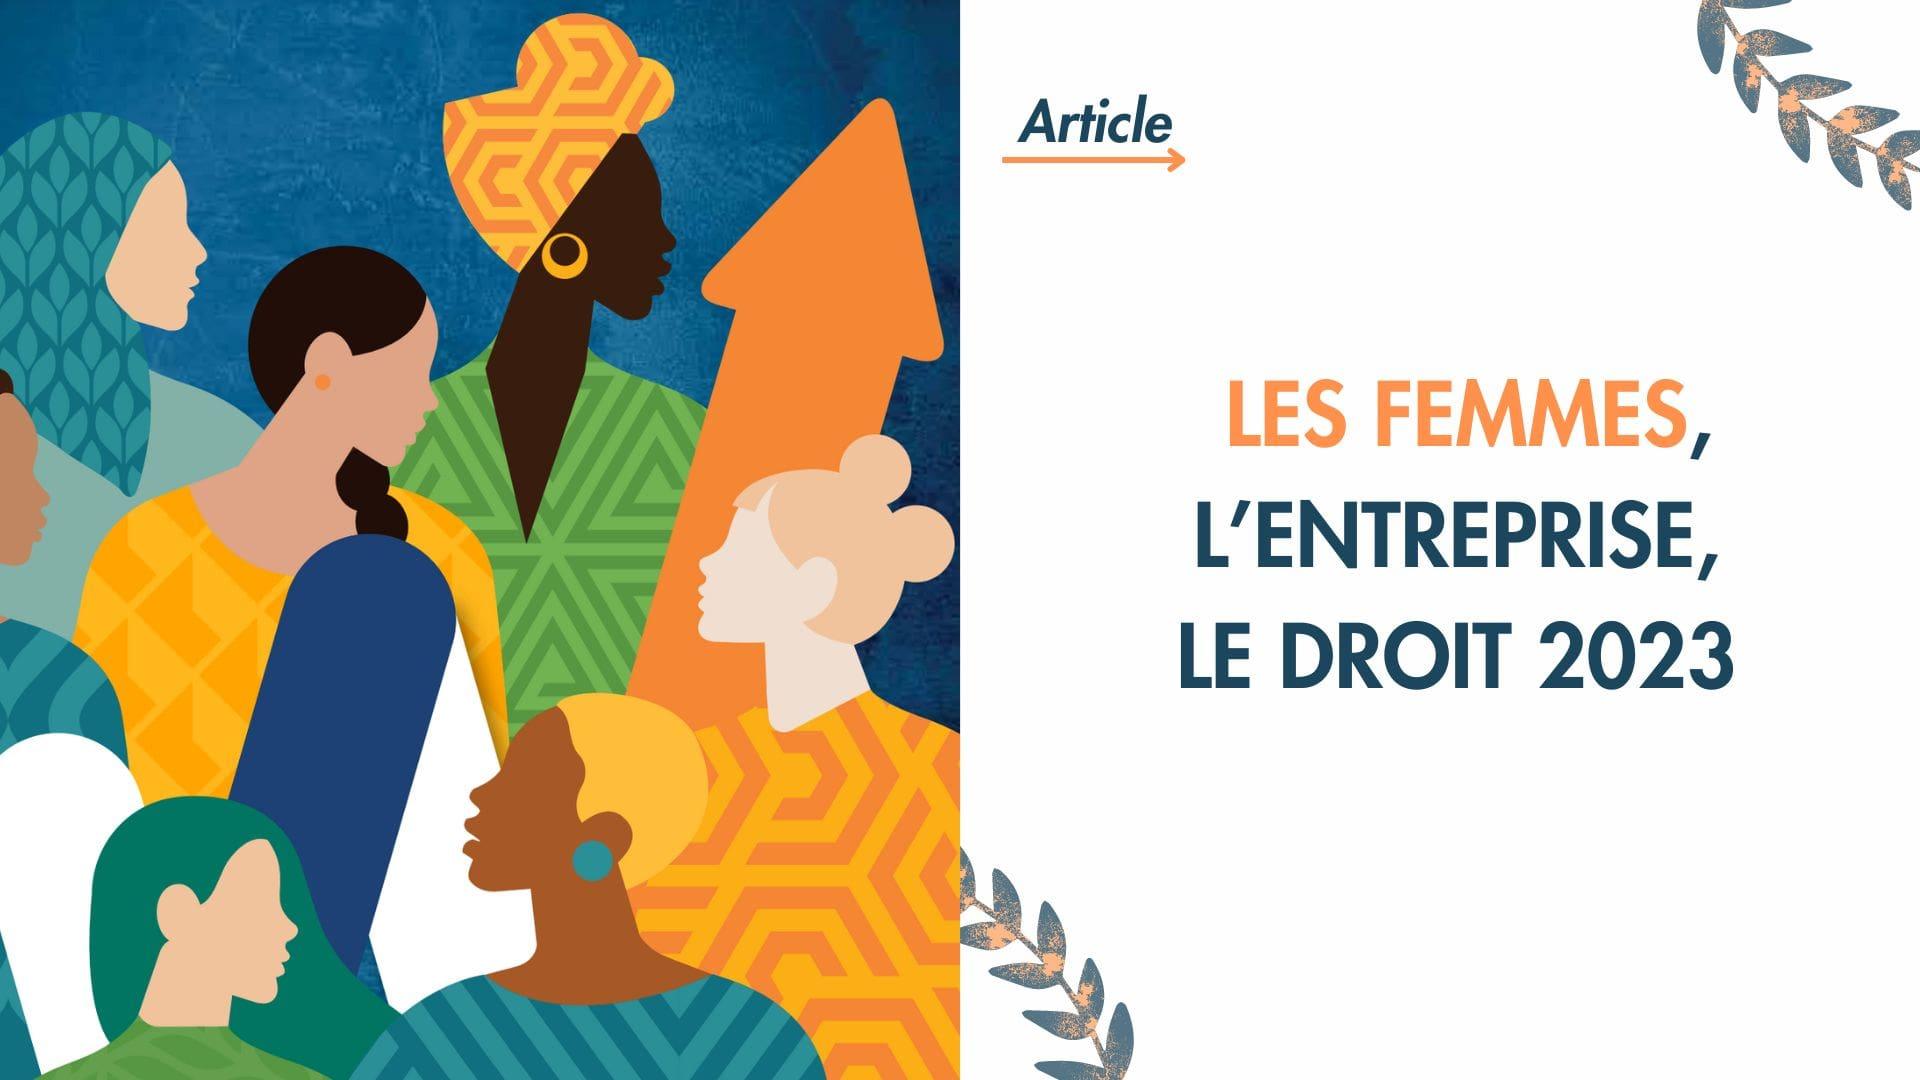 La journée internationale des droits des femmes: LES FEMMES, L'ENTREPRISE ET LE DROIT 2023!